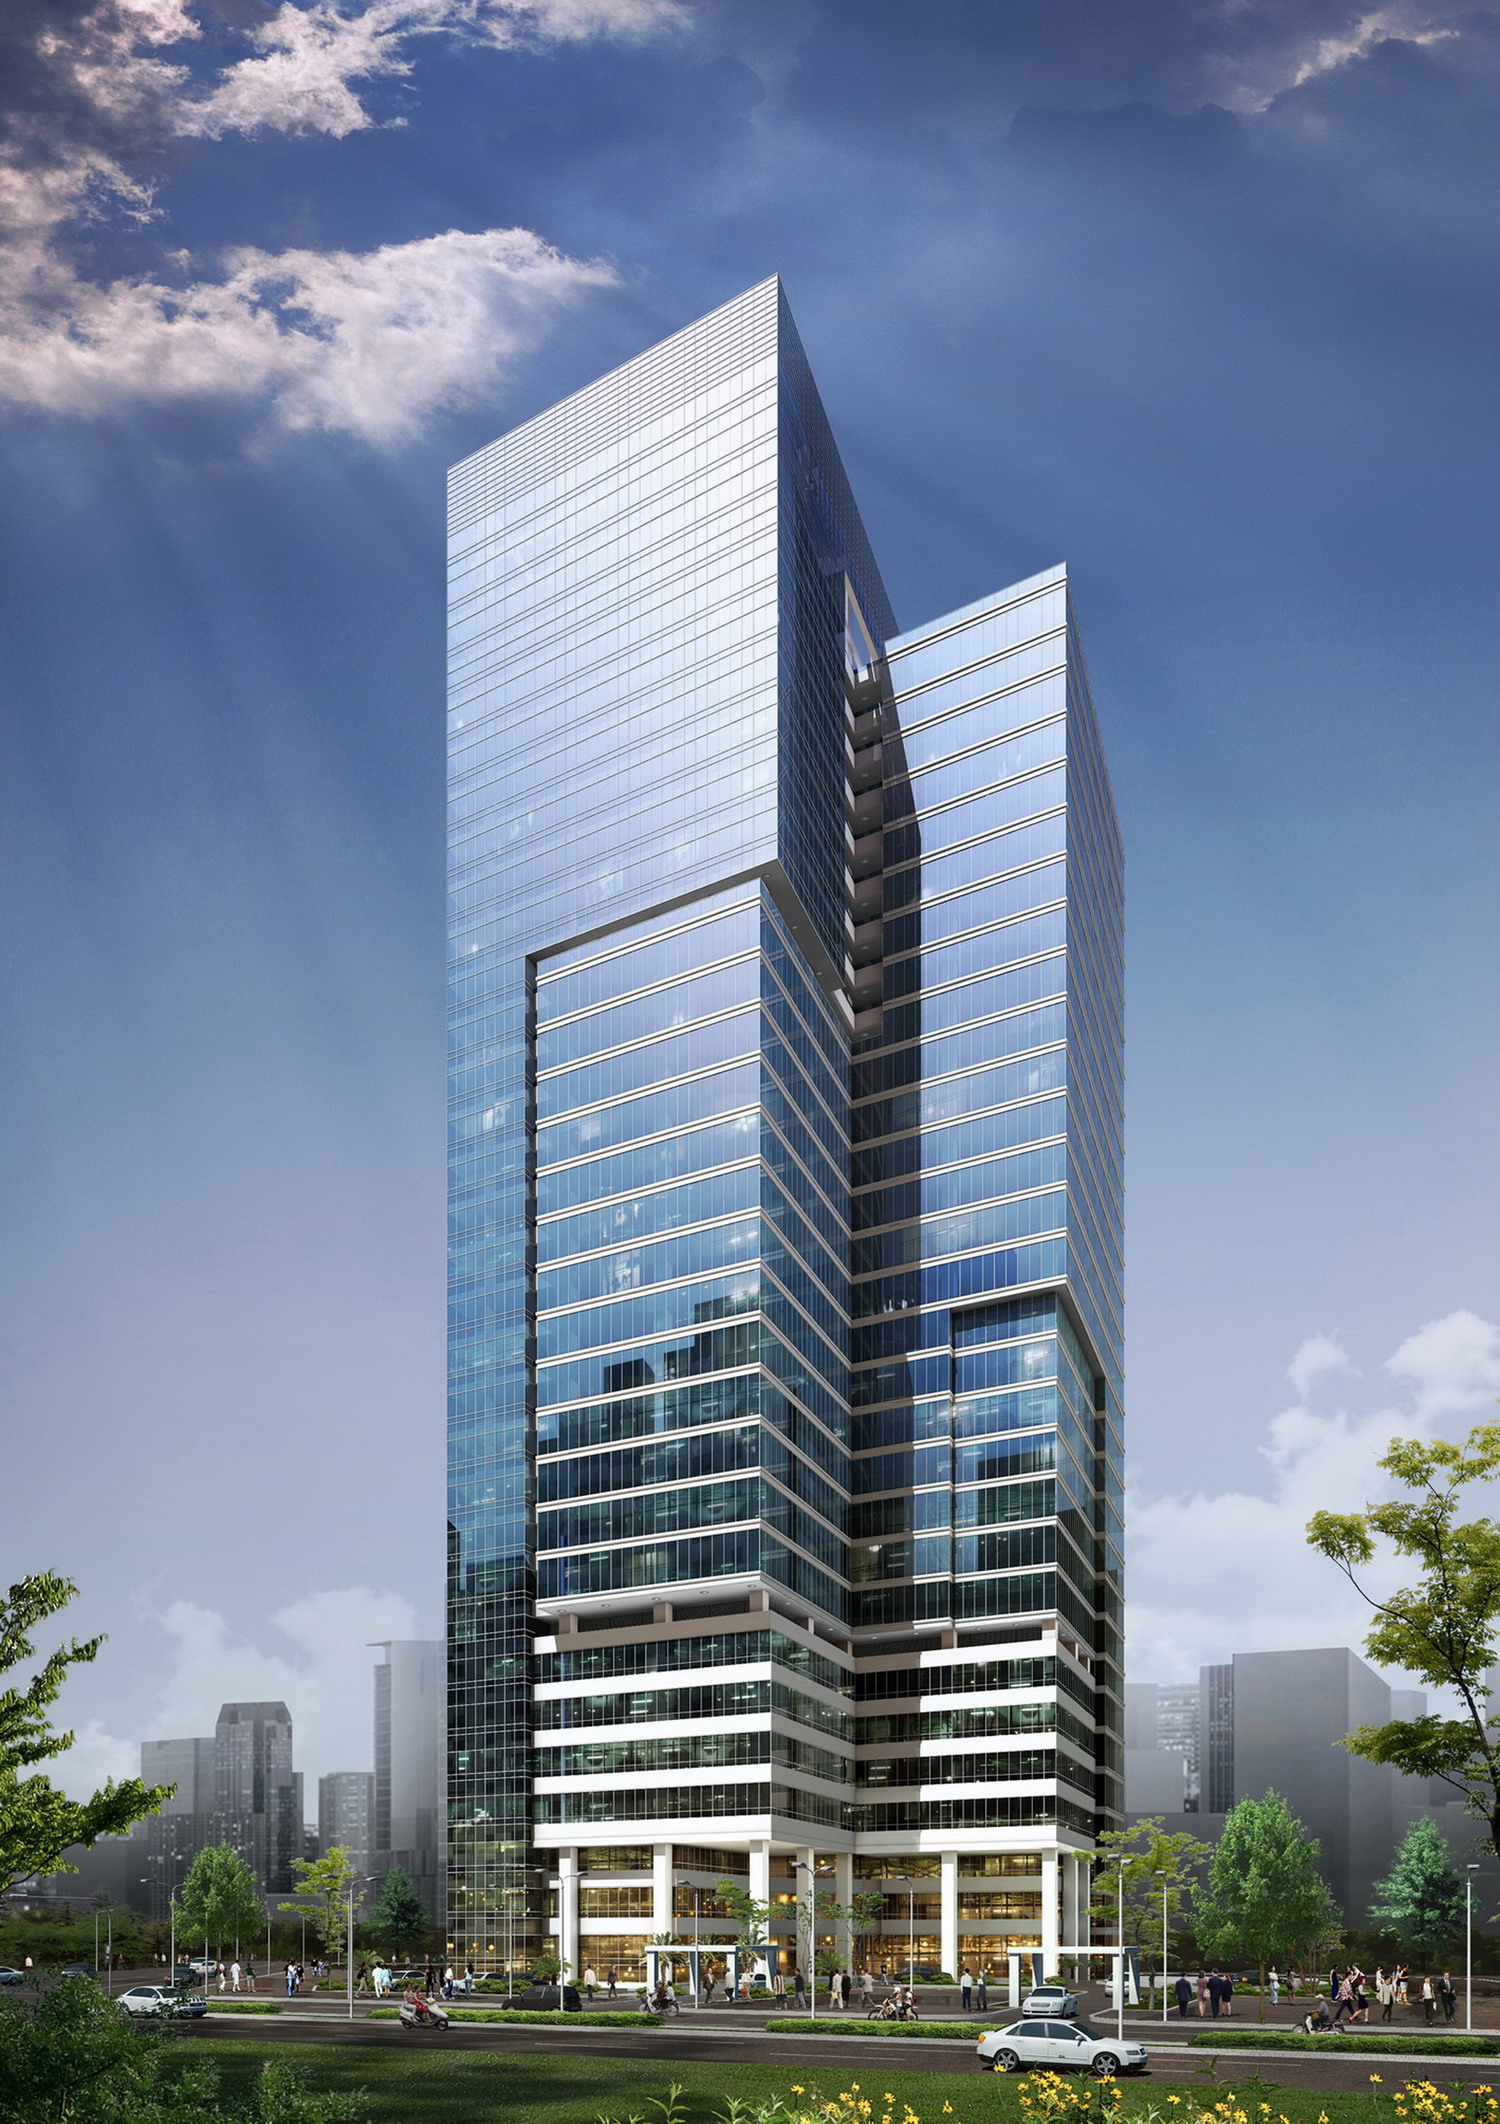 Western Bank Tower: Cao ốc văn phòng trong khu vực trung tâm